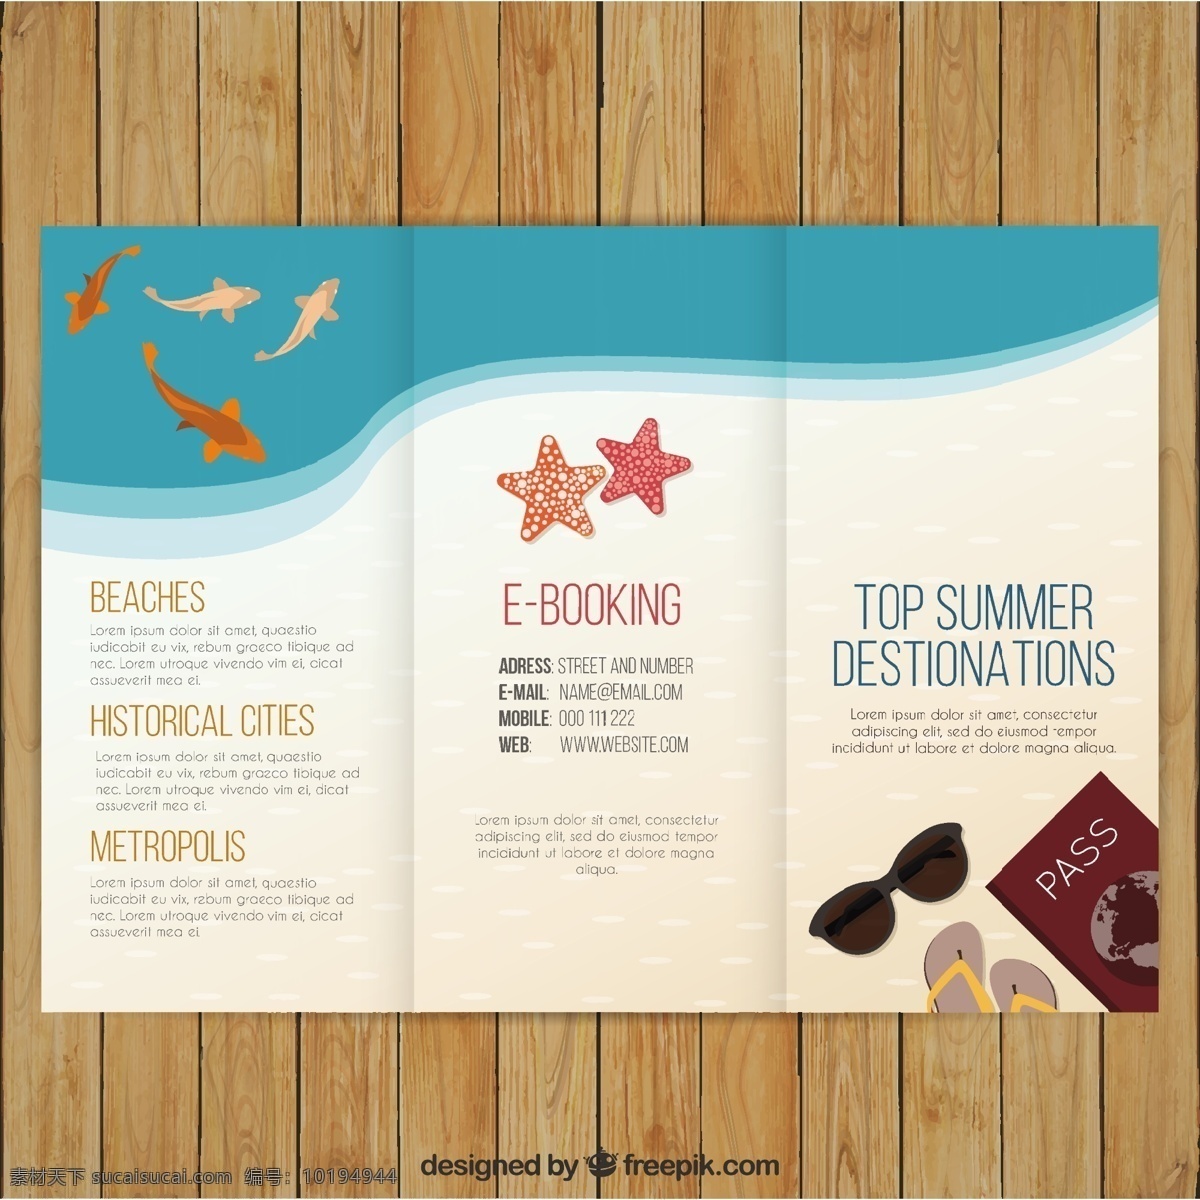 海滩 上 可爱 夏季 指南 宣传小册子 商务 宣传单 暑期 旅游 太阳 鱼 海 模板 小册子 公司 节日 太阳眼镜 飞行模板 文具 假期 白色